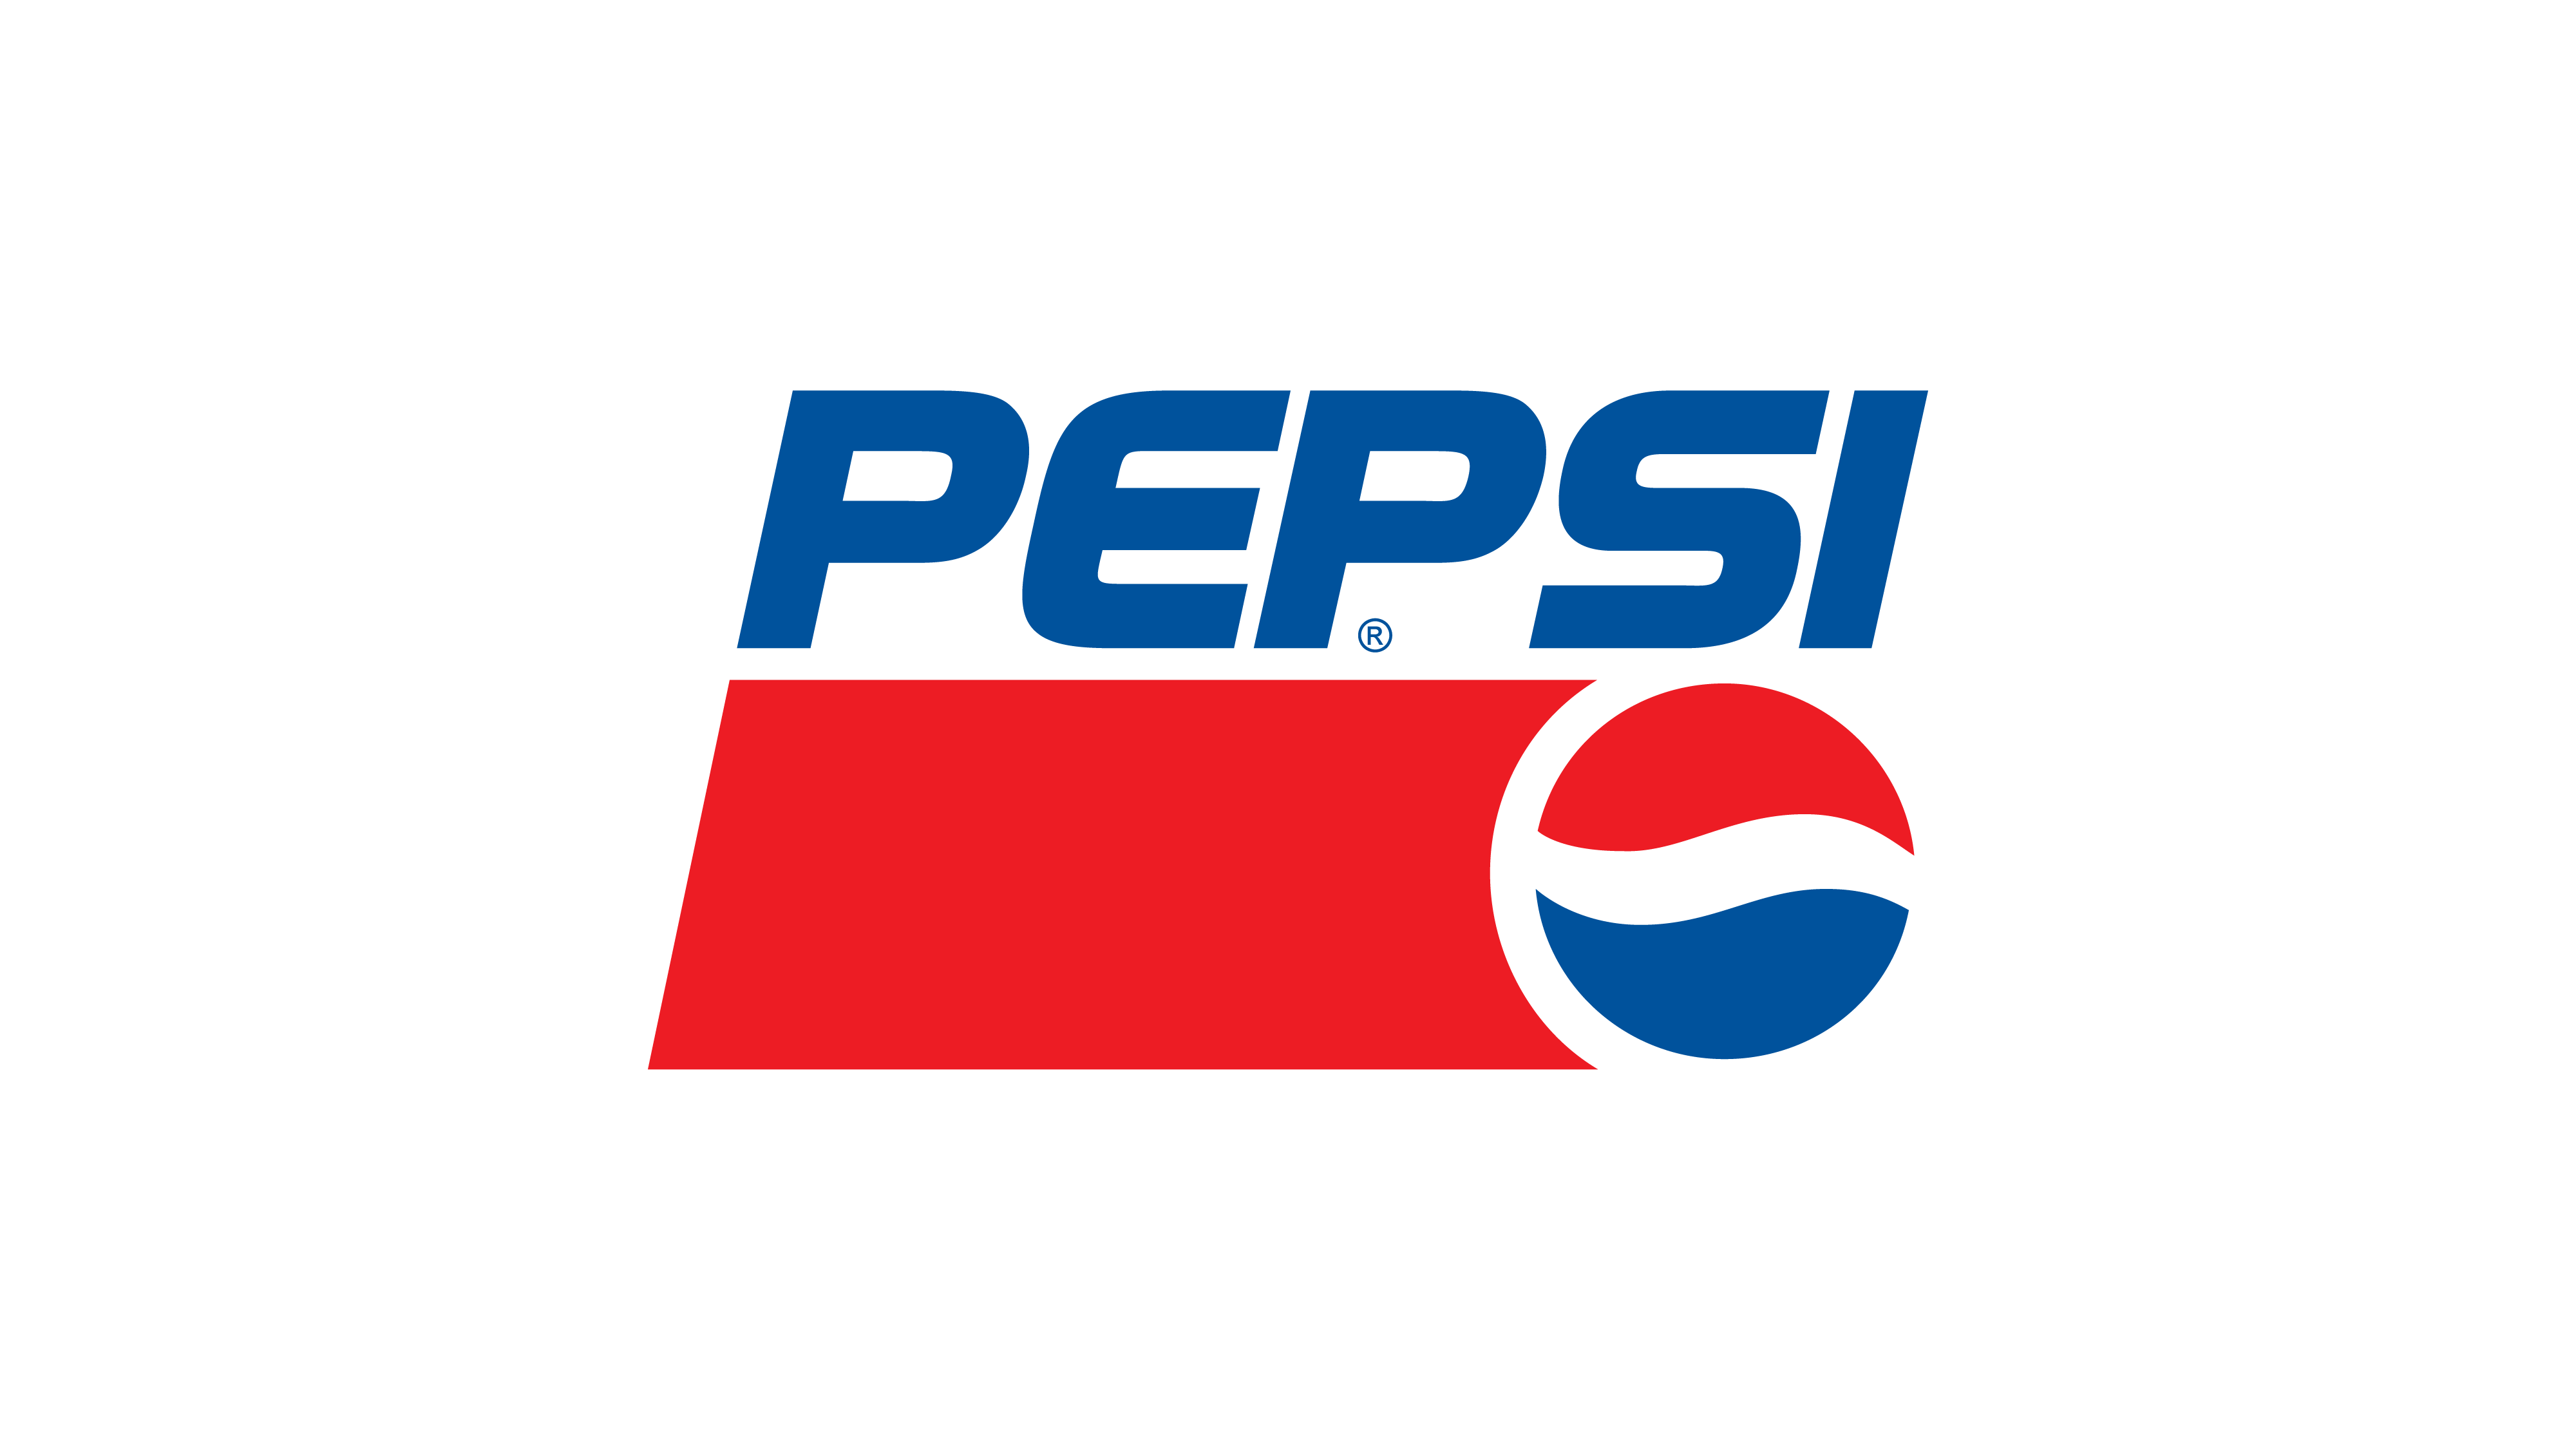 Pepsi - Pepsi Logo Png Transparent PNG - 500x500 - Free Download on NicePNG